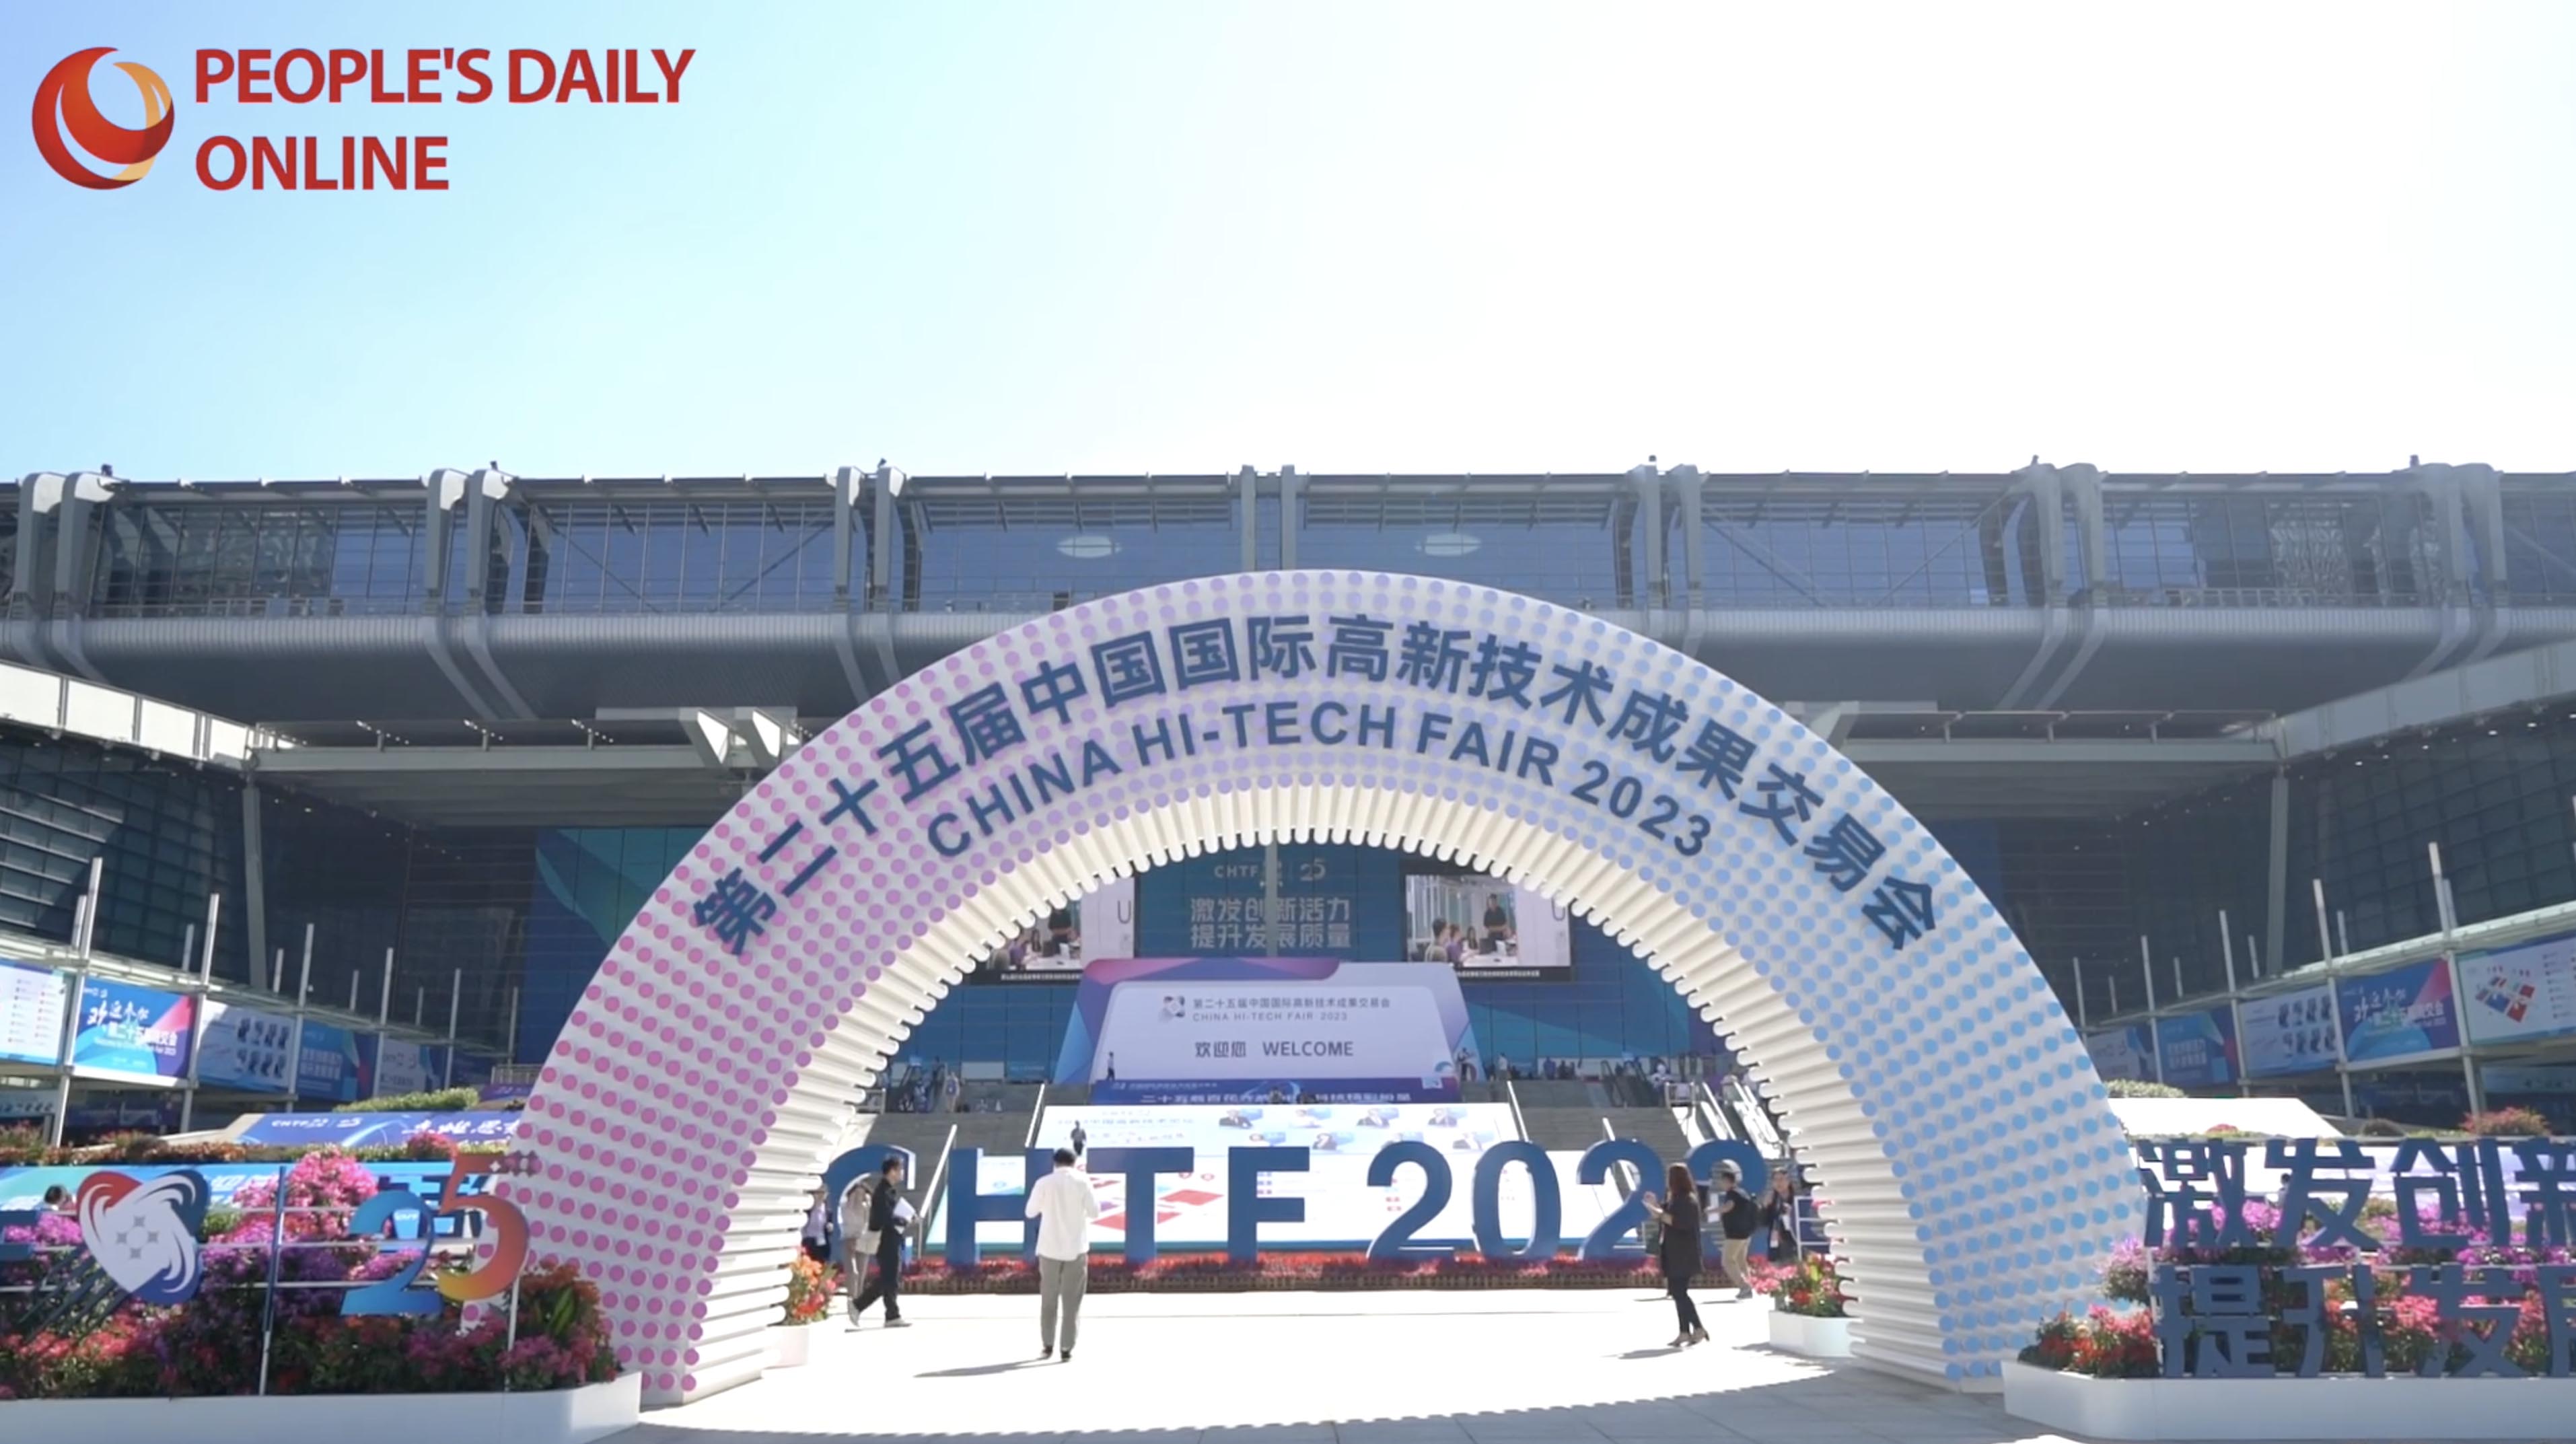 Explore cutting-edge technologies showcased at China Hi-Tech Fair